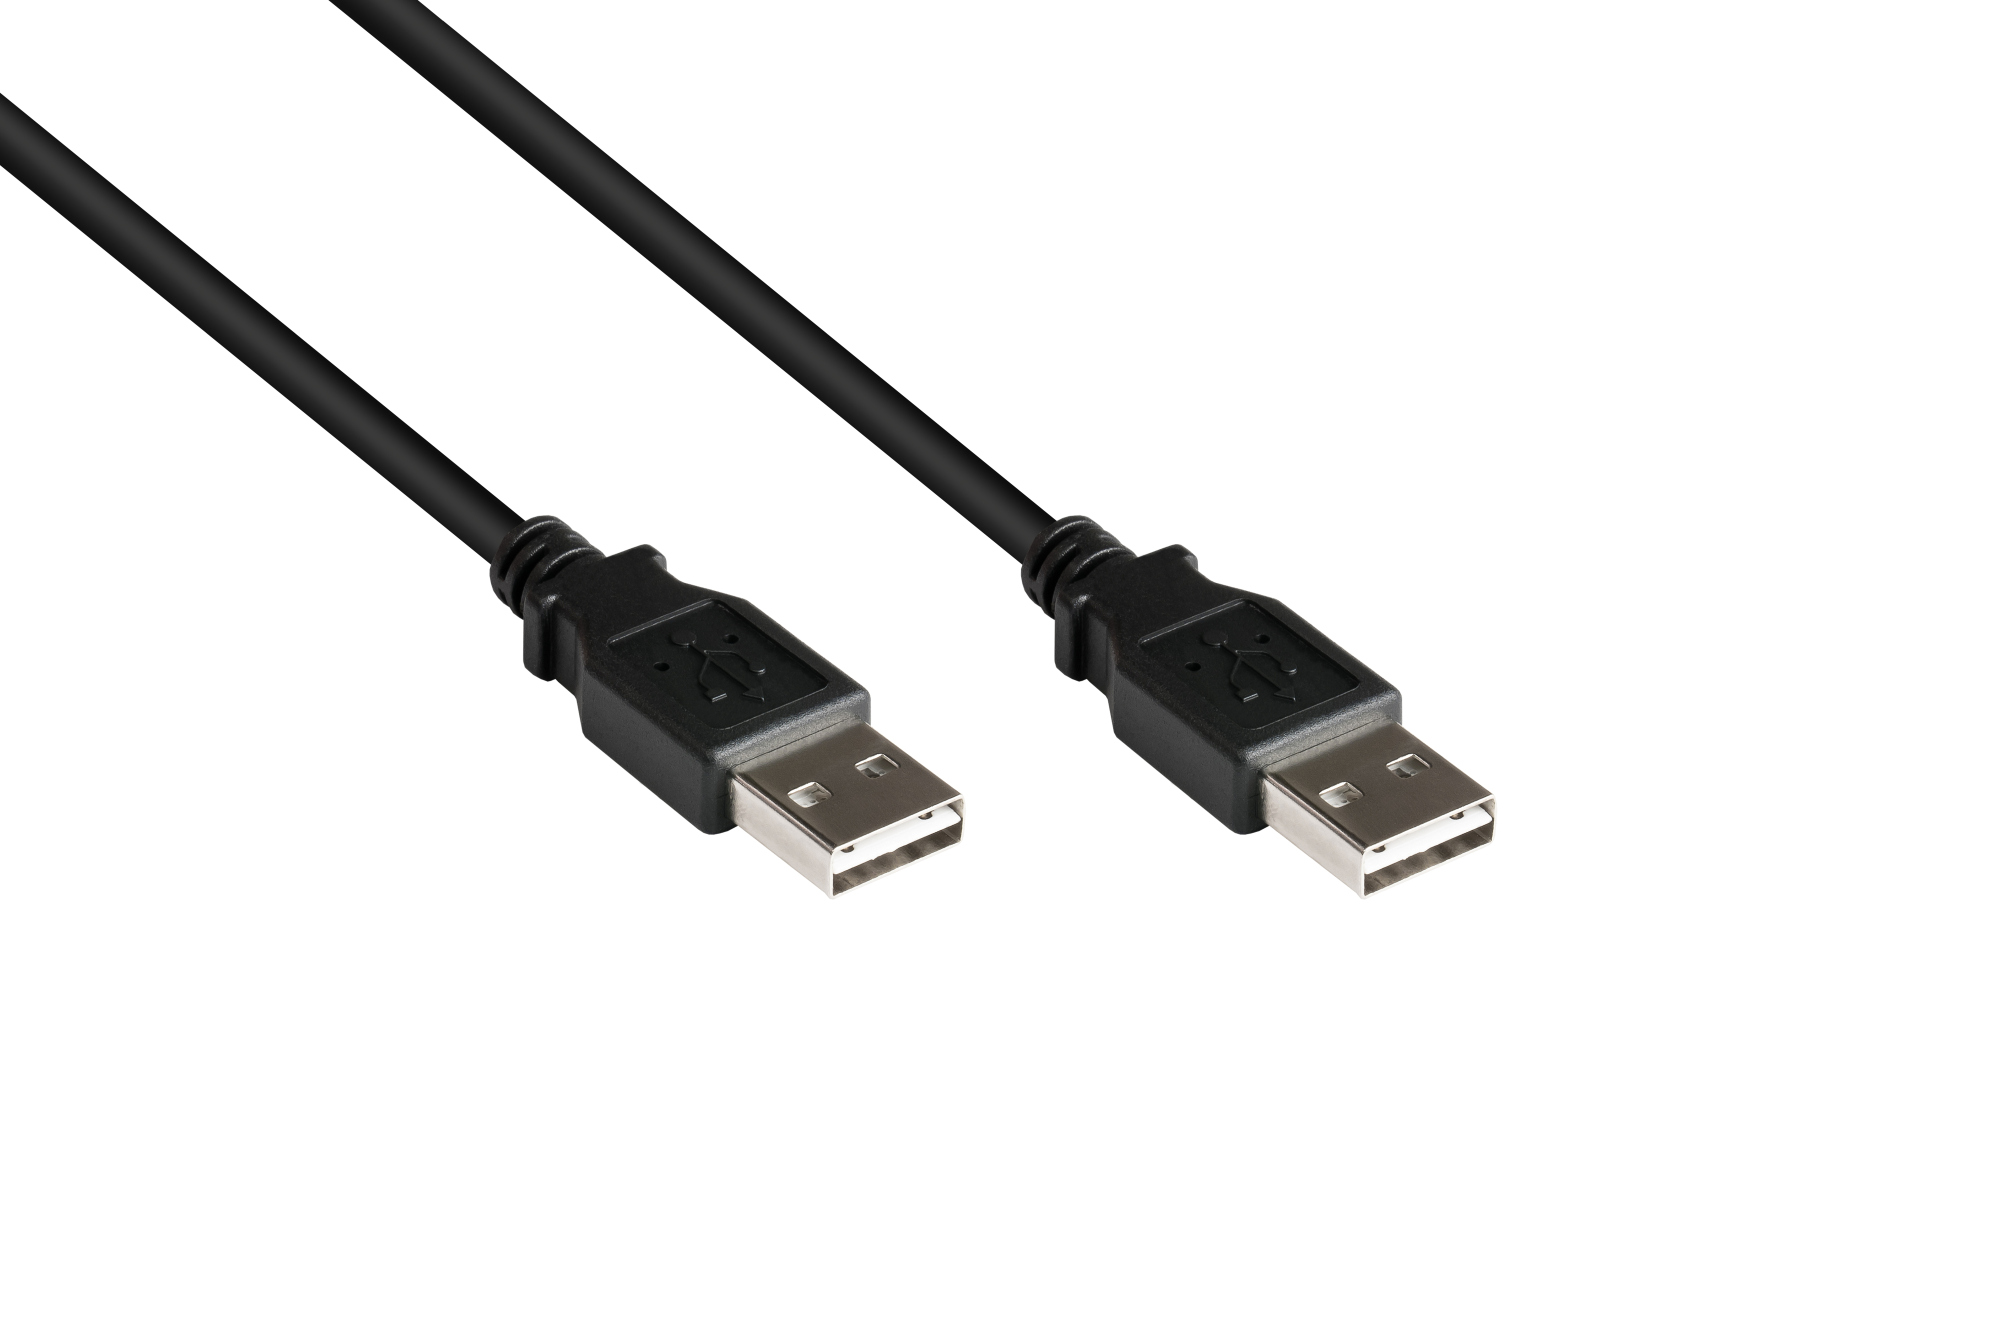 Anschlusskabel USB 2.0 High-Speed EASY A Stecker an EASY A Stecker, schwarz, 3m